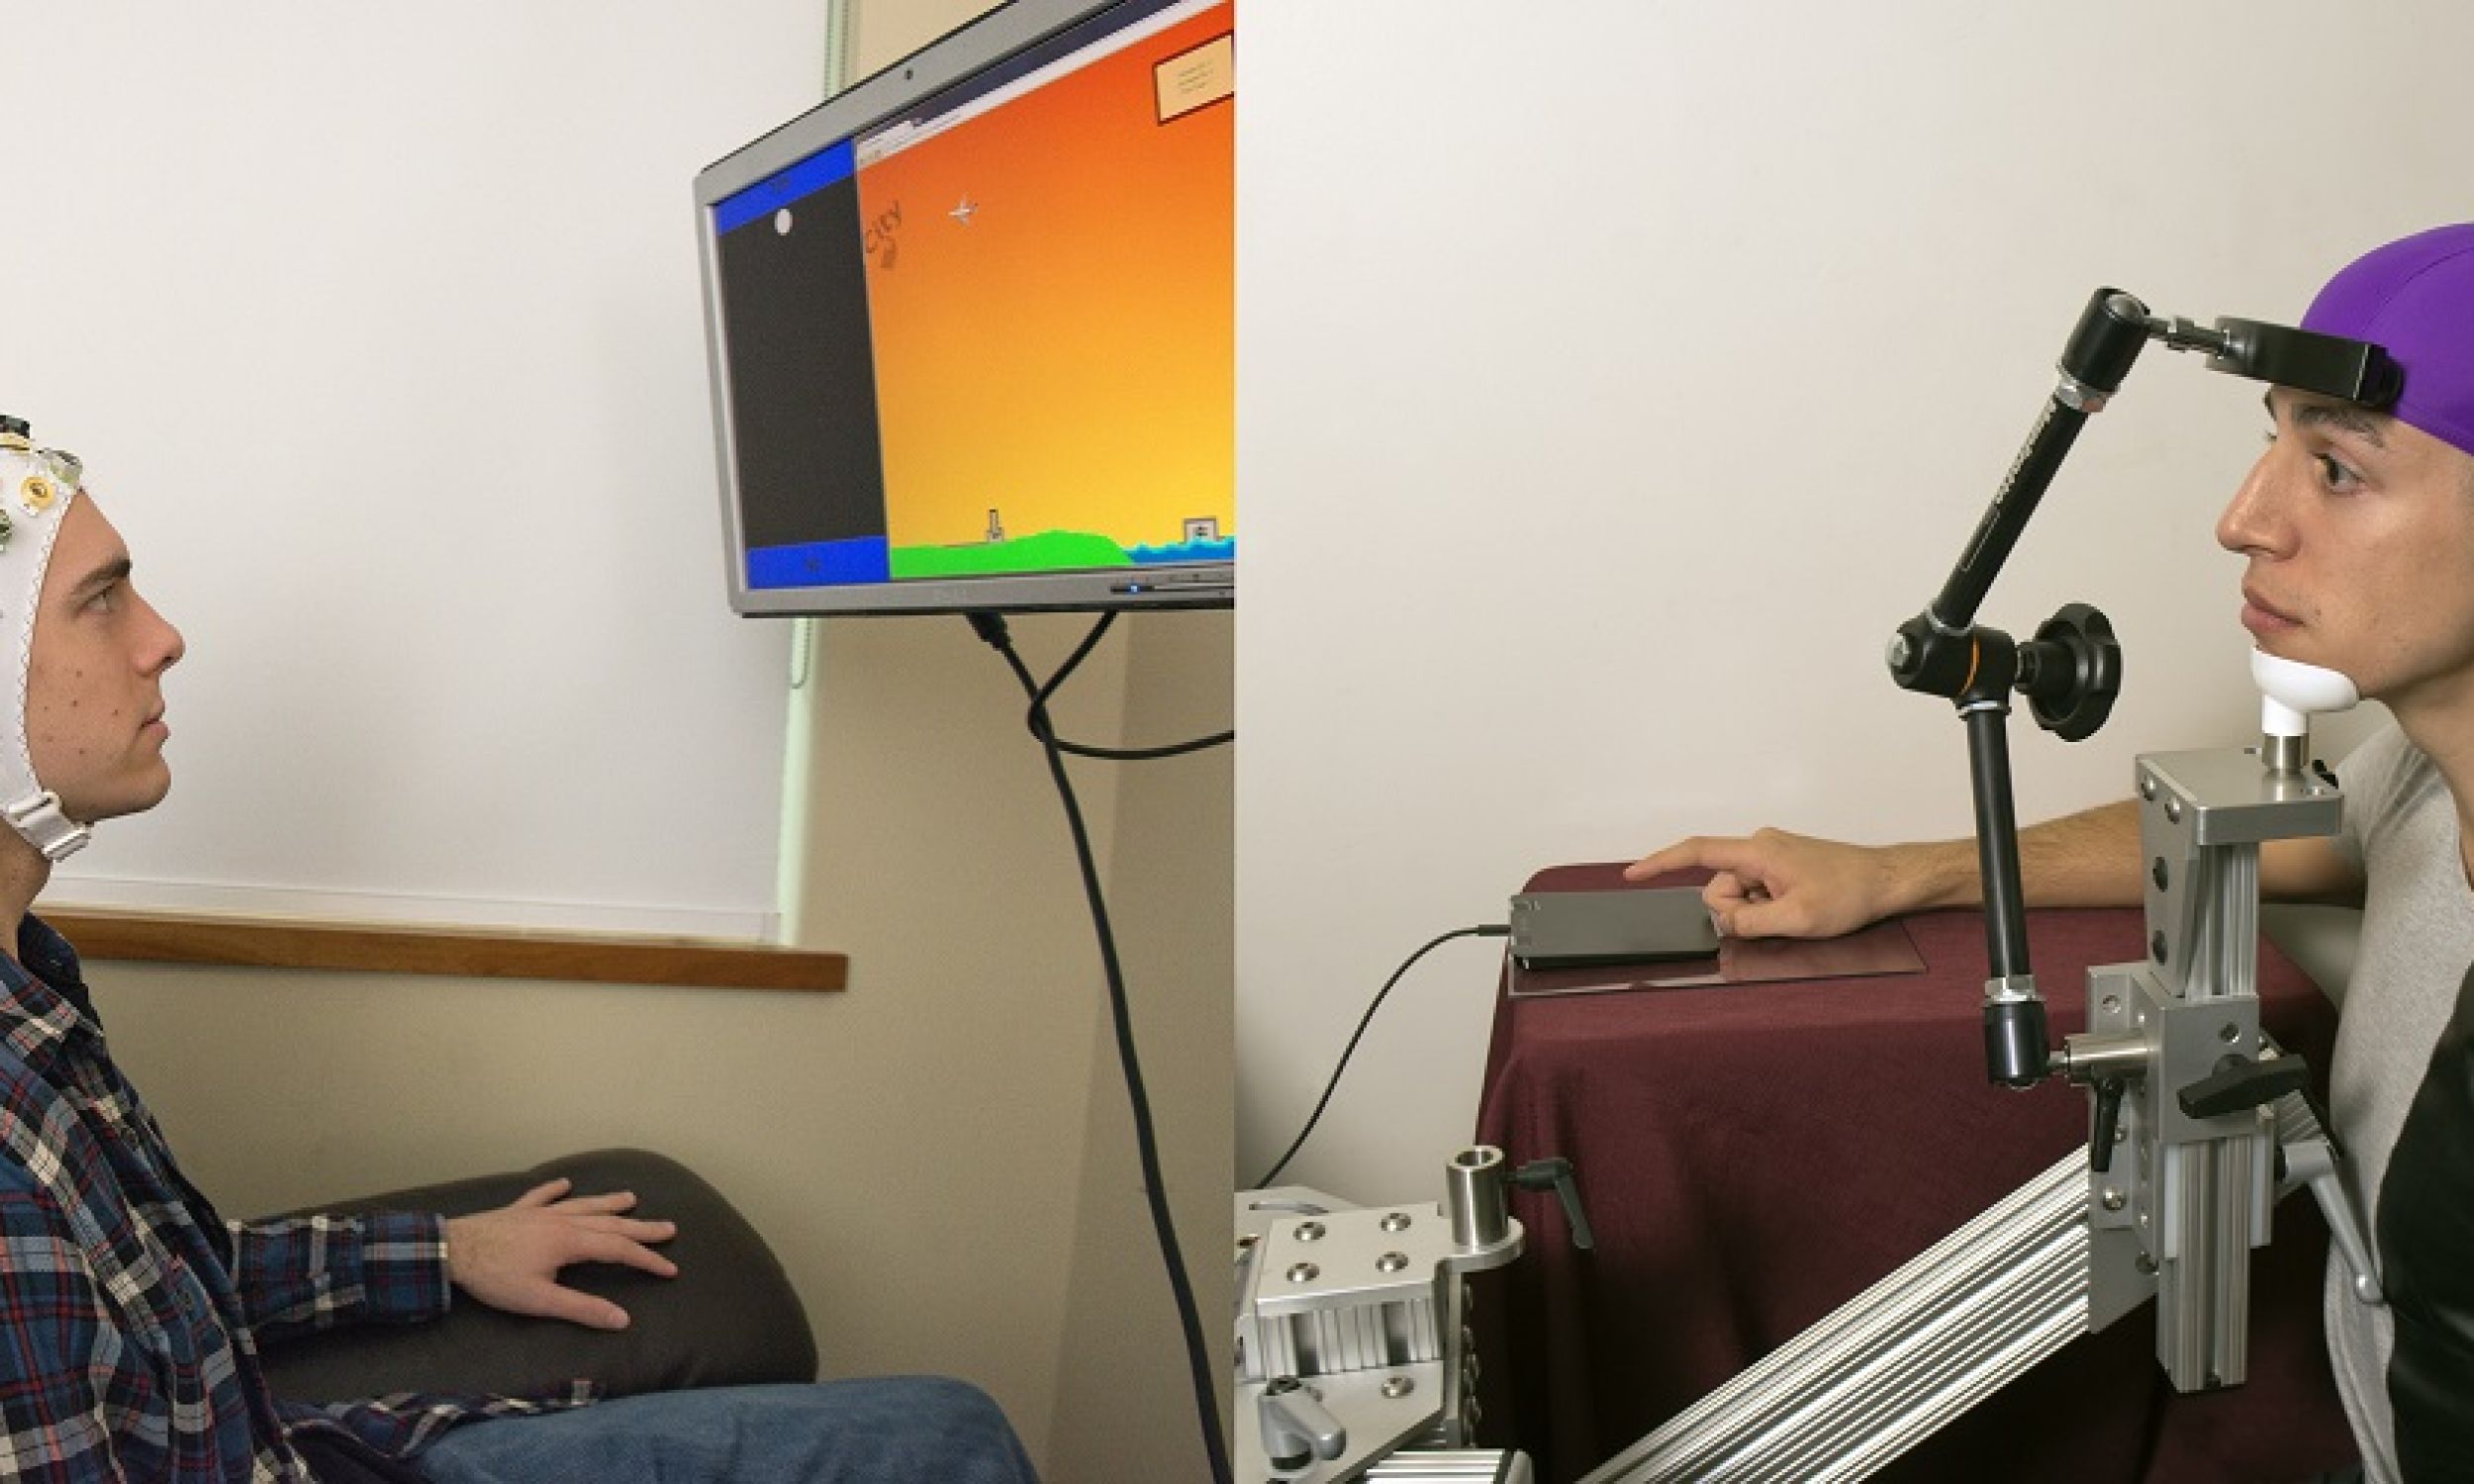 Studenci Uniwersytetu Waszyngtonu  w Seattle – Darby Losey (po lewej, jest nadawcą) i Jose Ceballos (odbiorca) znajdują się w dwóch różnych budynkach kampusu podczas eksperymentu demonstrującego  połączenie mózg-mózg. Nadawca myśli o wykonaniu ruchu – tu: wystrzeleniu z armaty – w różnych punktach gry komputerowej. Sygnał ten jest przesyłany przez sieć bezpośrednio do mózgu odbiorcy, którego ręka uderza w touchpad, czyli panel dotykowy, aby wystrzelić armatę. Fot. Mary Levin, University of Washington